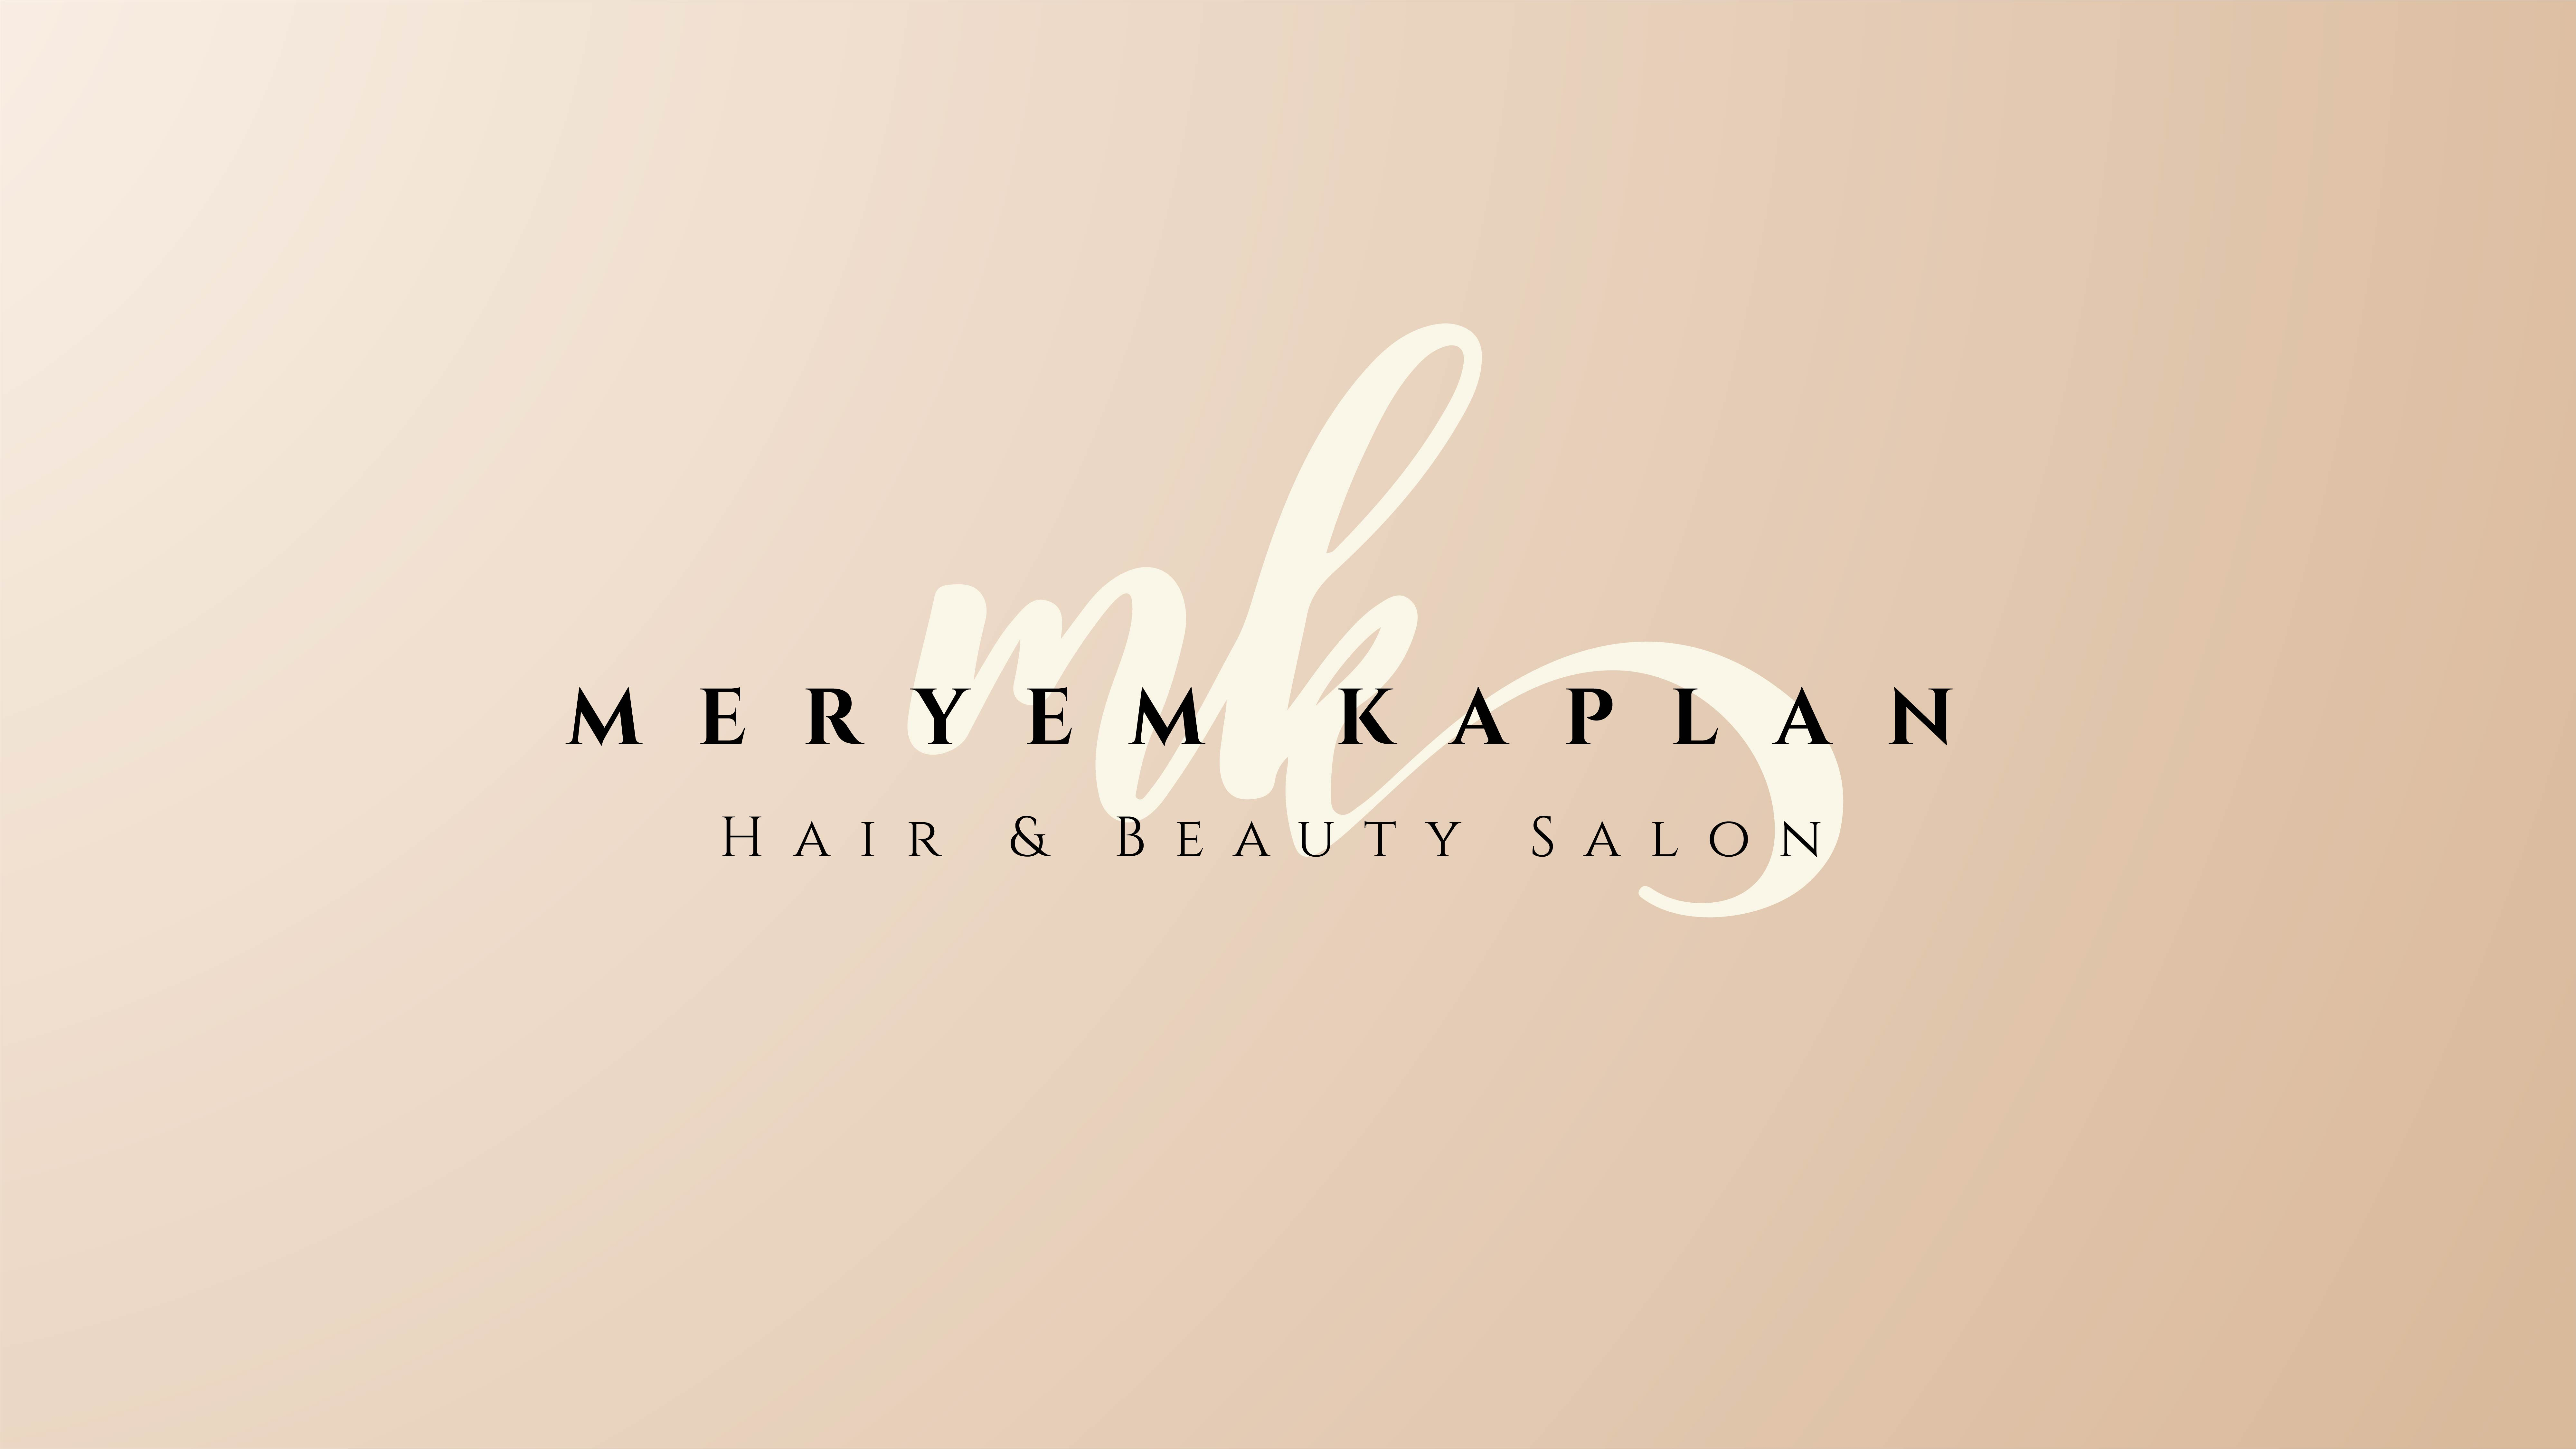 MK Hair and Beauty Salon